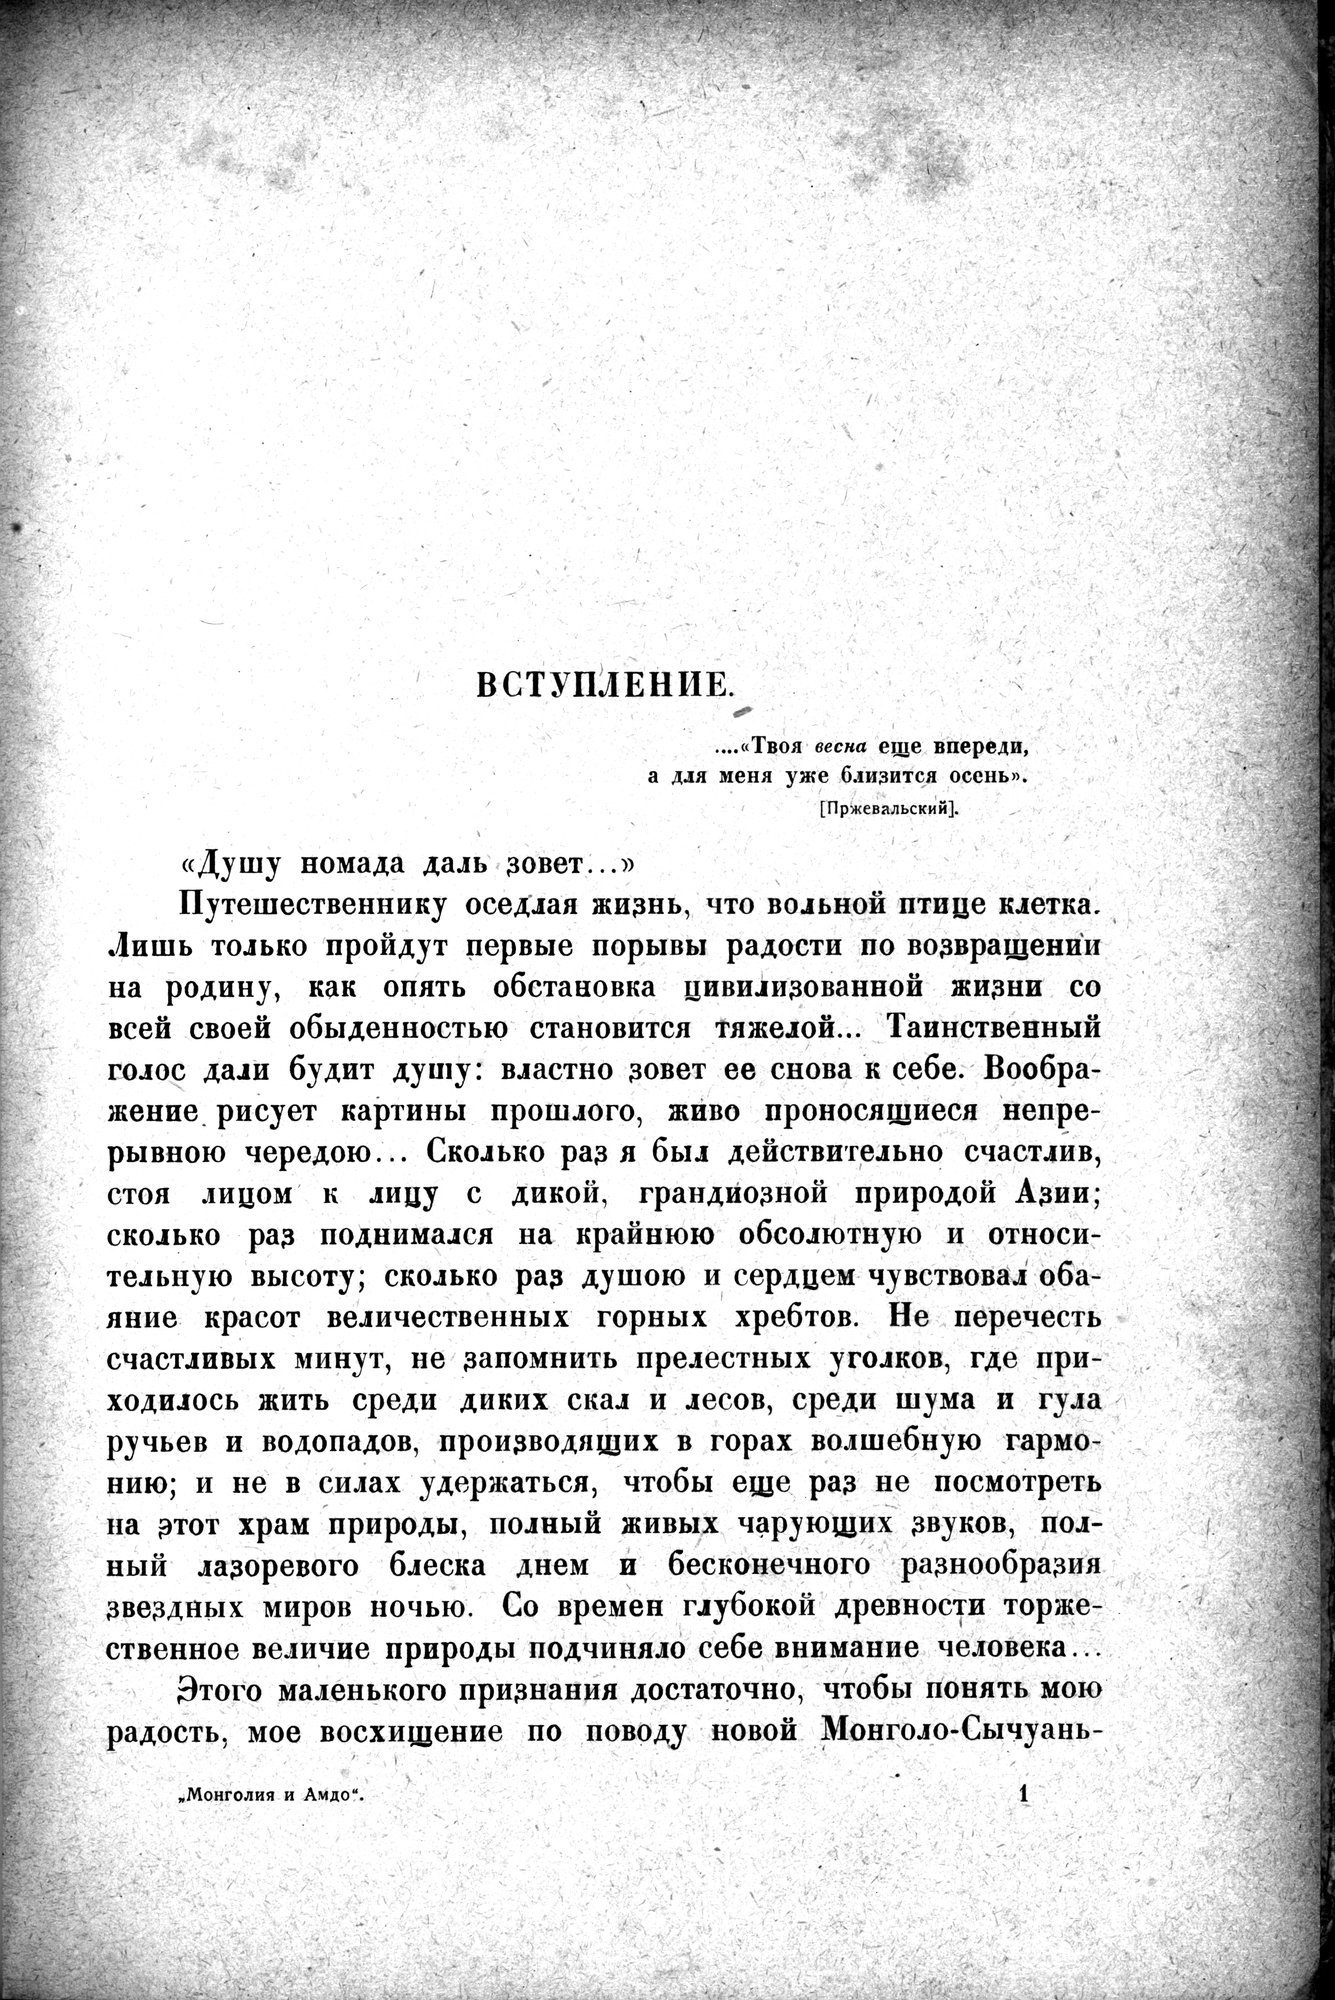 Mongoliya i Amdo i mertby gorod Khara-Khoto : vol.1 / 15 ページ（白黒高解像度画像）